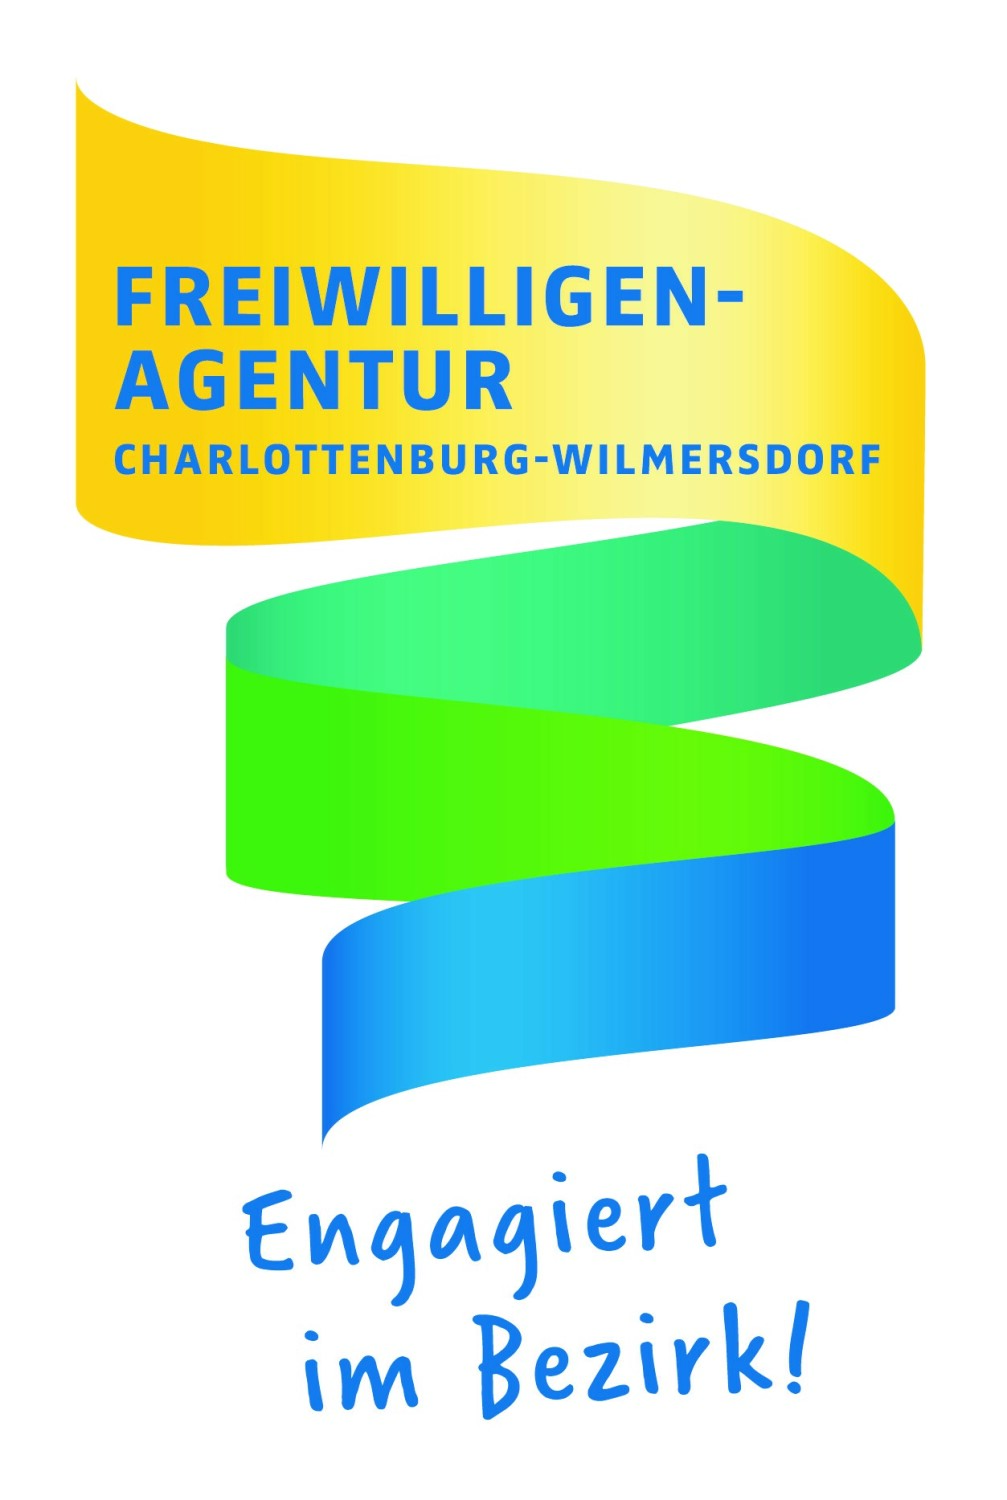 Webseite der FreiwilligenAgentur Charlottenburg-Wilmersdorf